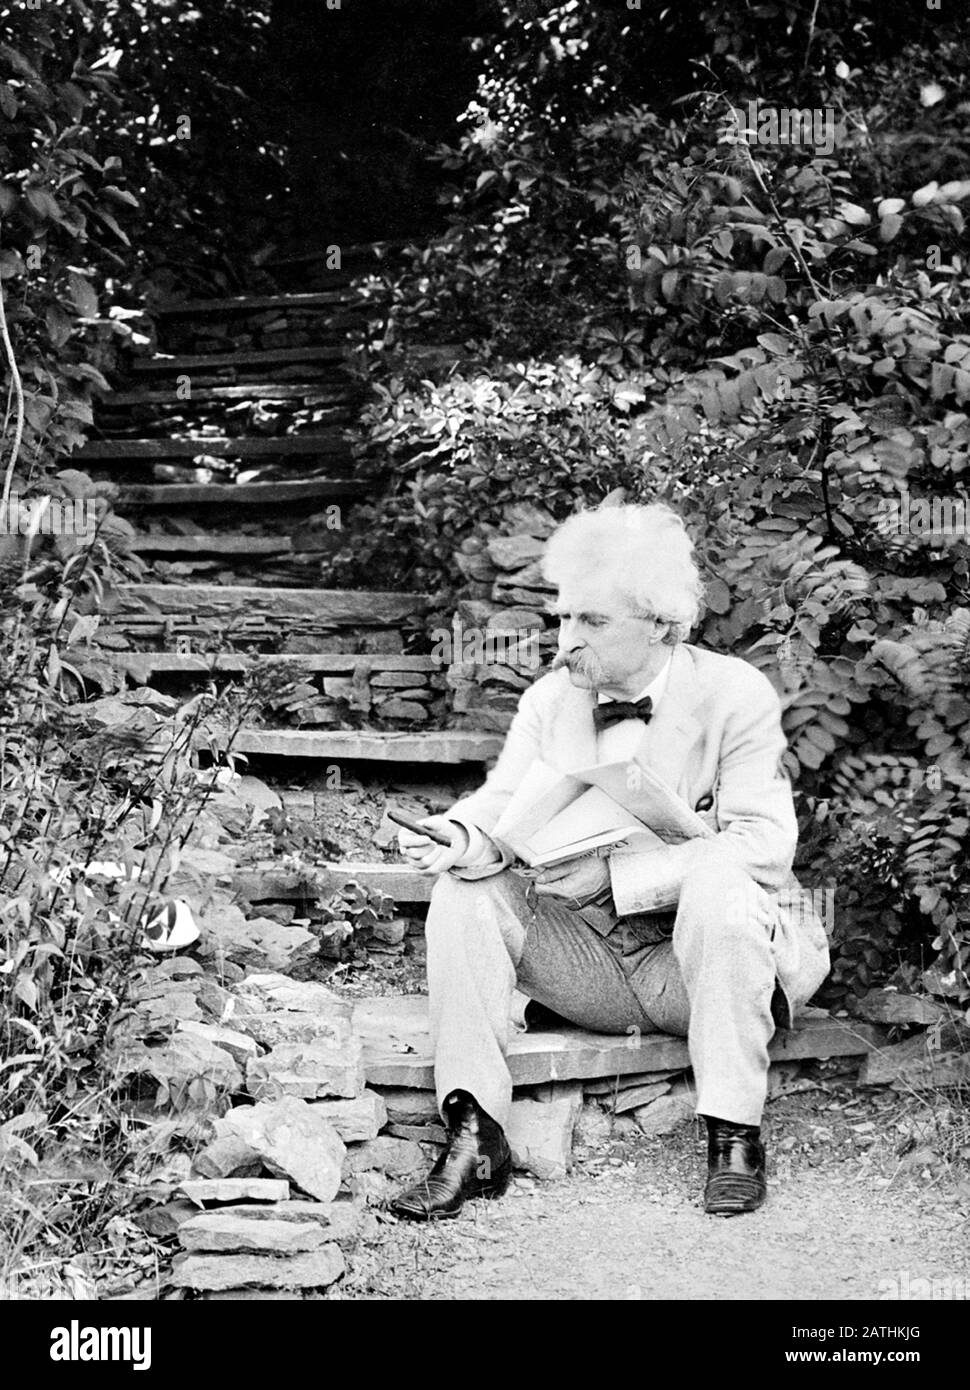 Vintage-Portrait-Foto des amerikanischen Schriftstellers und Humoristen Samuel Langhorne Klemens (zwischen 1835 und 1910), besser bekannt unter seinem Federnamen Mark Twain. Foto ca. 1903 von T E Marr/Curtis Publishing Co Stockfoto